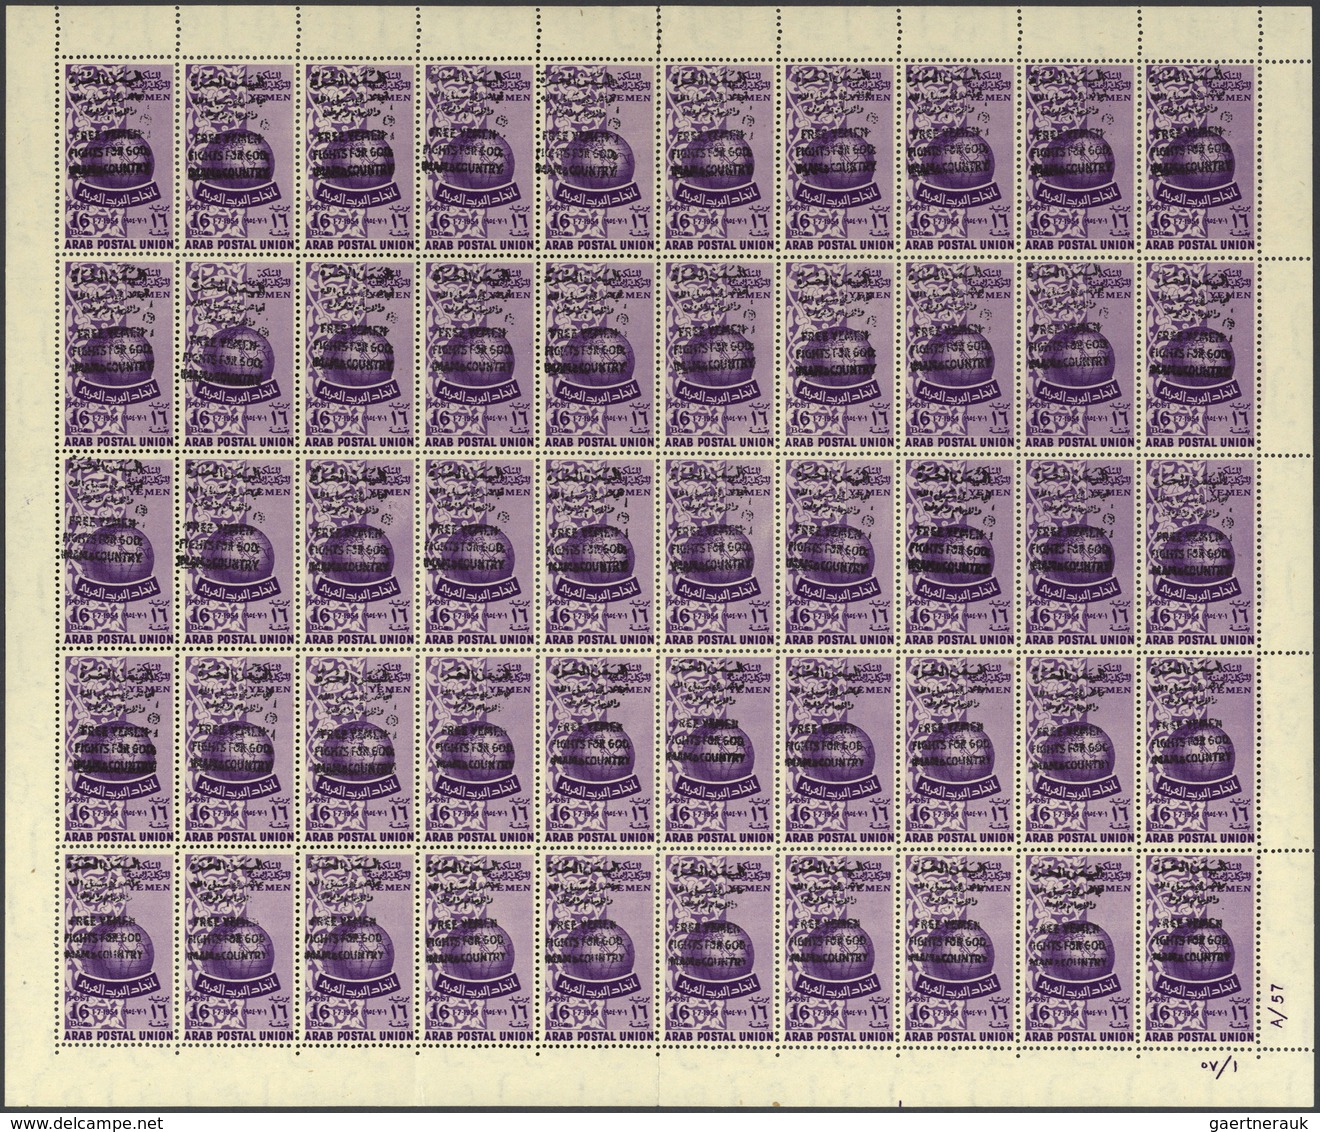 Jemen - Königreich: 1964, "FREE YEMEN" Handstamps, Accumulation Of Apprx. 315 Stamps, Mainly Within - Yémen